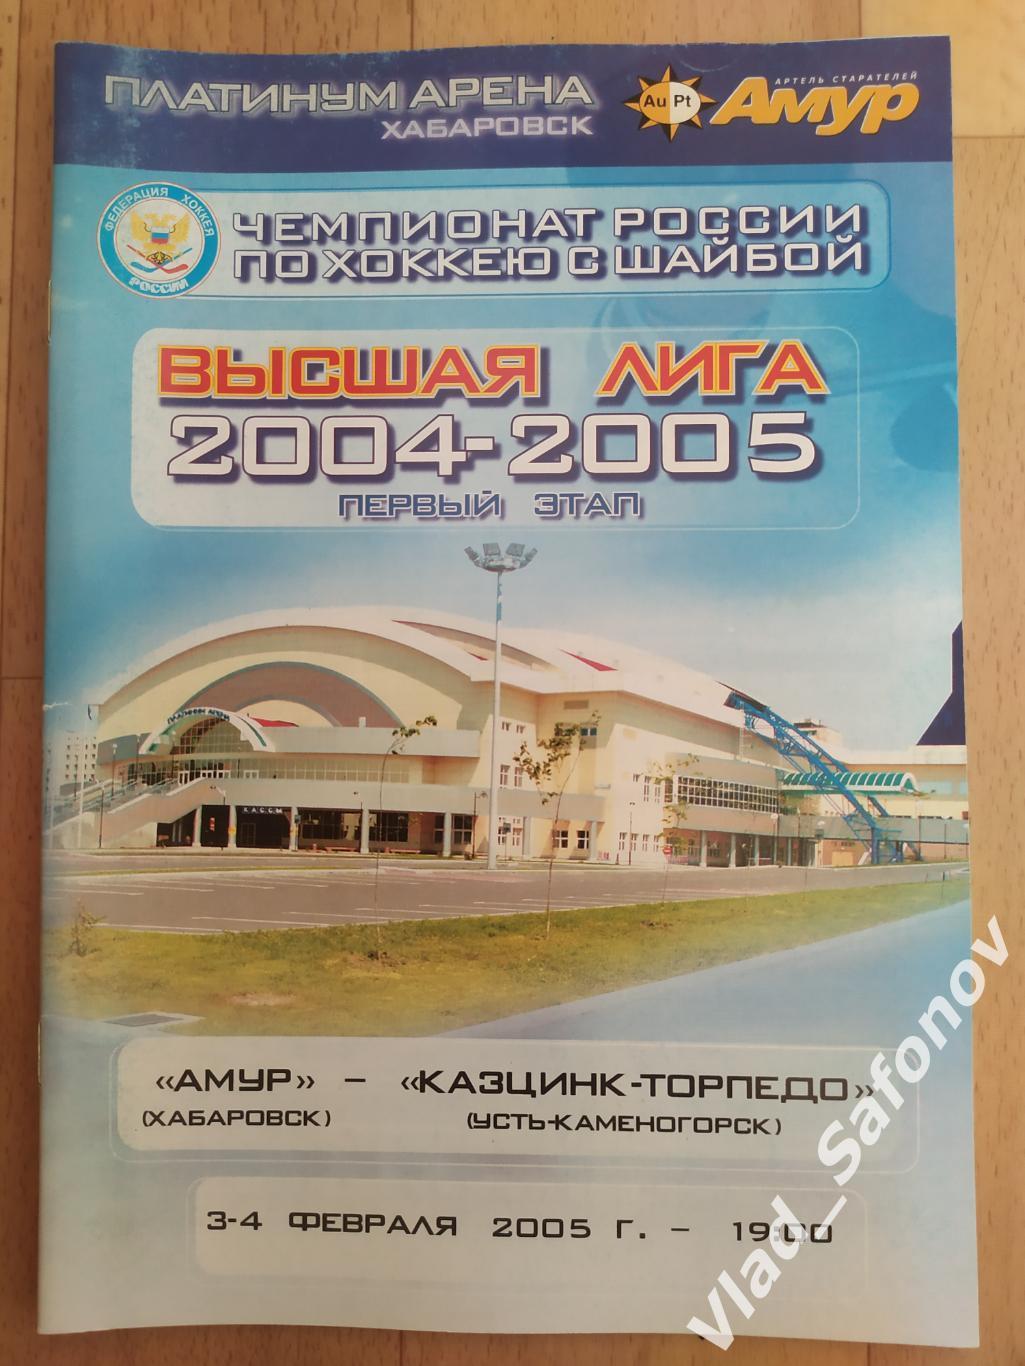 Амур(Хабаровск) - Казцинк-Торпедо(Усть-Каменогорск). Высшая лига. 03-04/02/2005